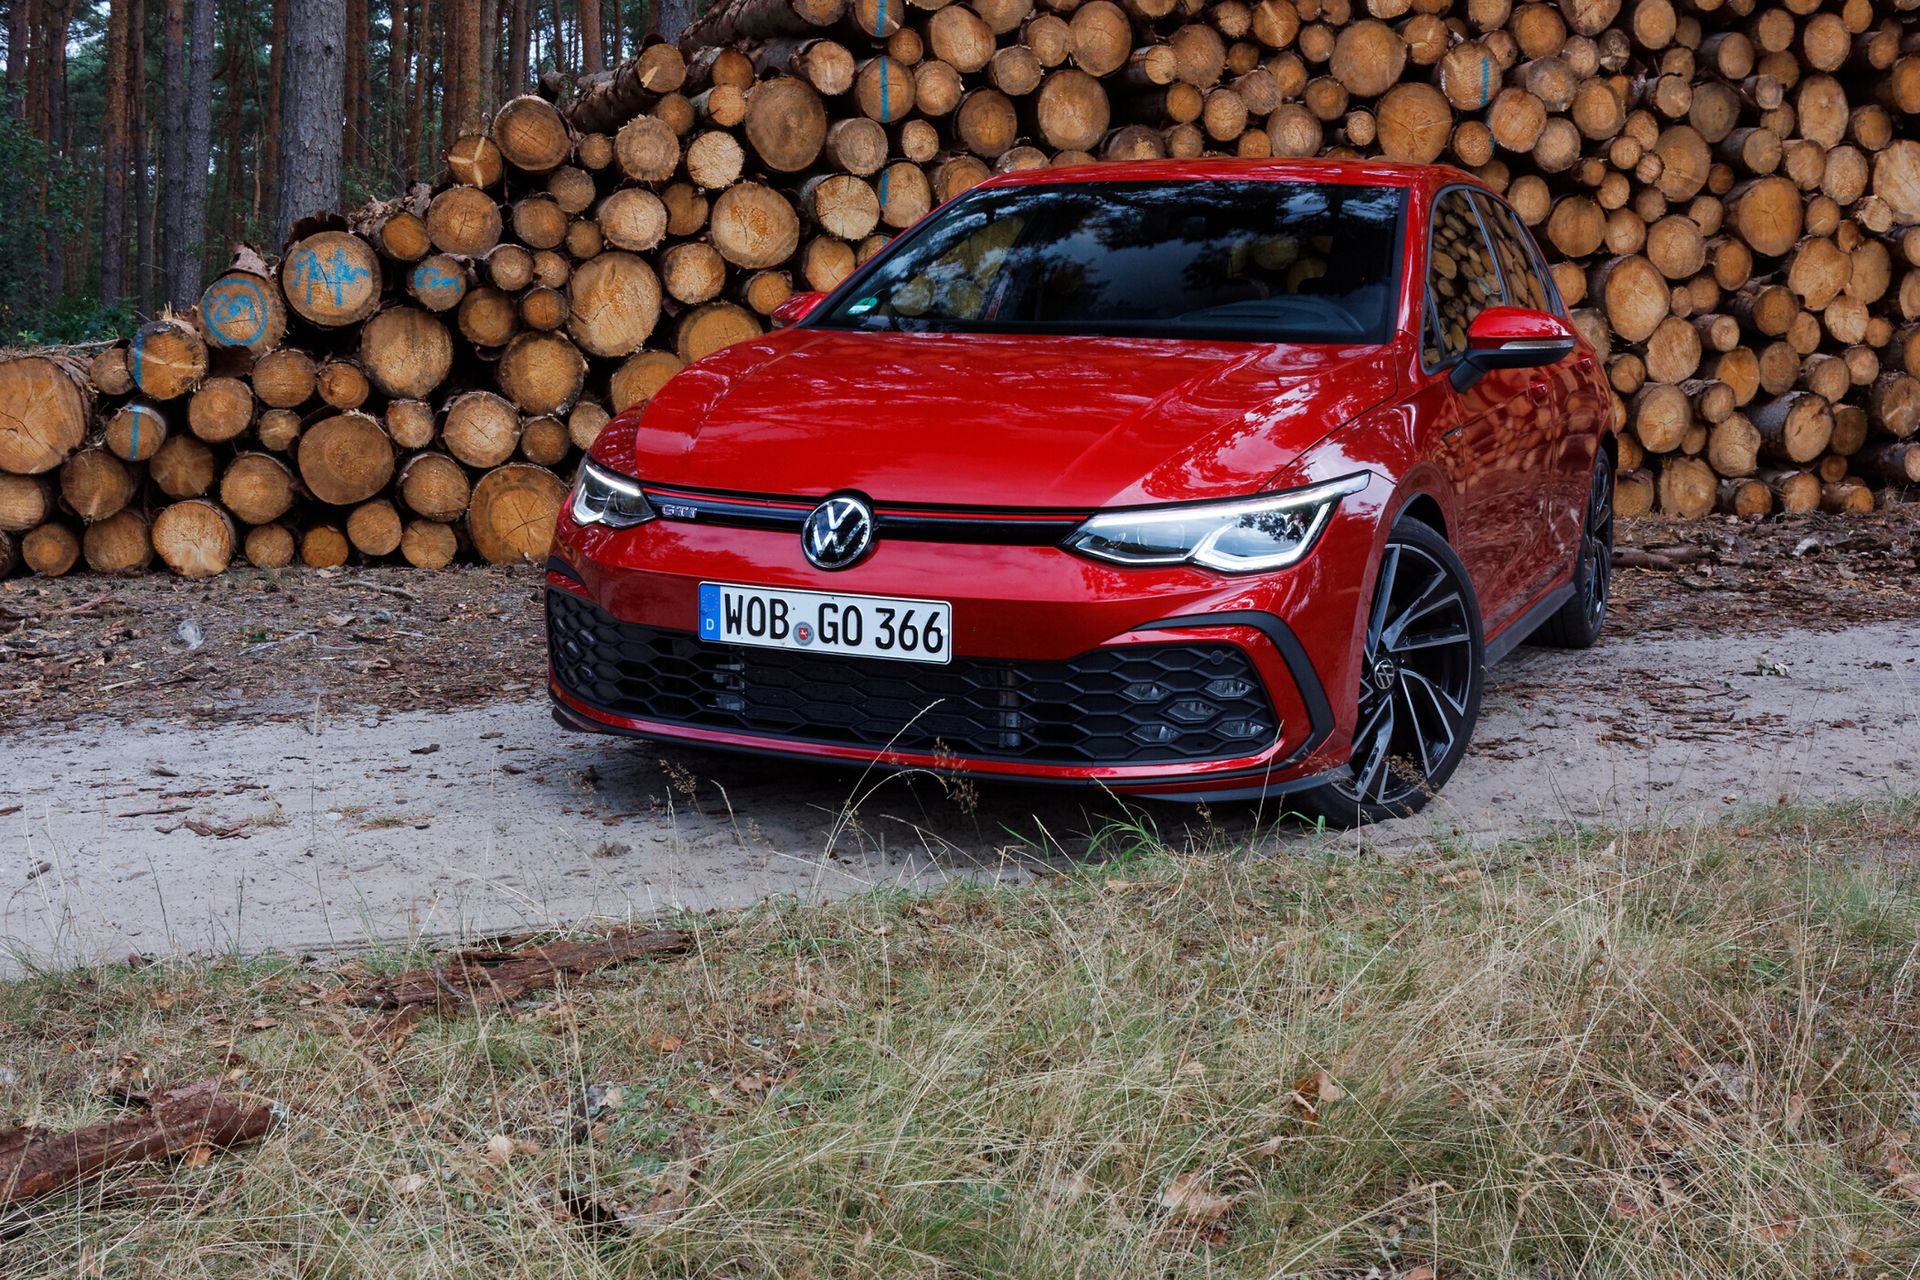 Pierwsza Jazda Nowym Volkswagenem Golfem Gti: Inne Podejście Do Klasyka | Autokult.pl